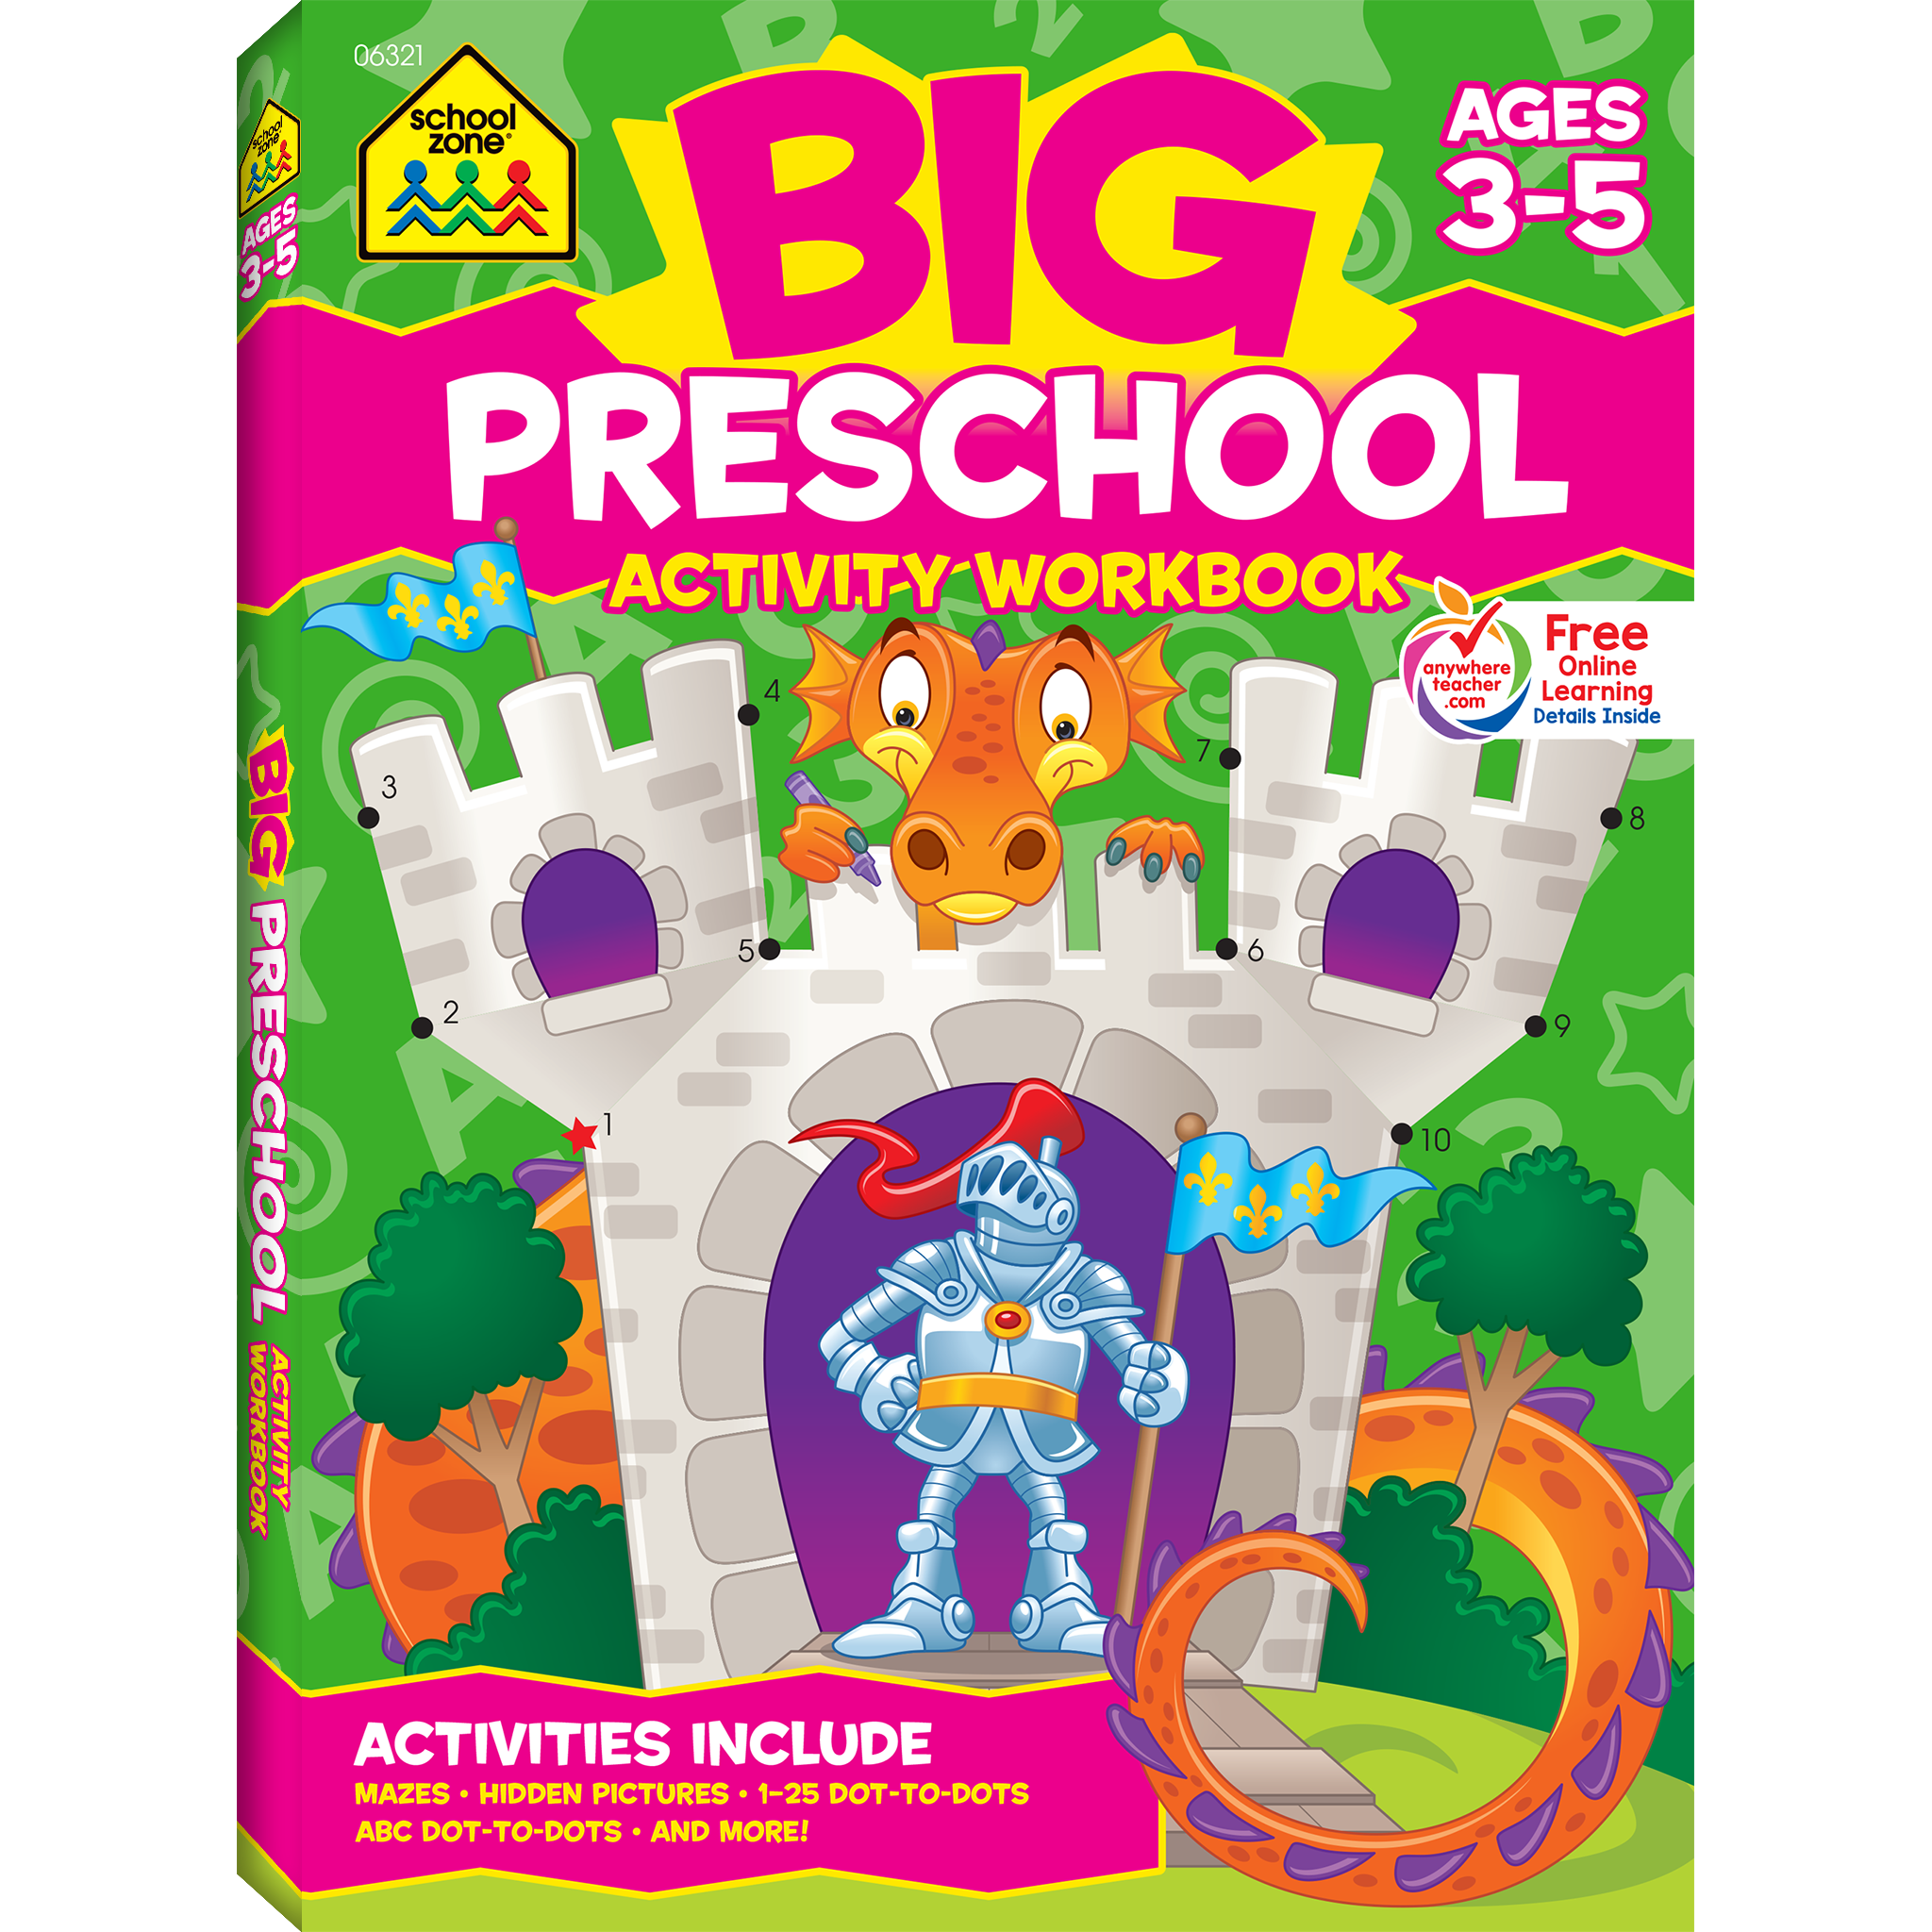 Big preschool activity workbook. Maze clipart preschooler